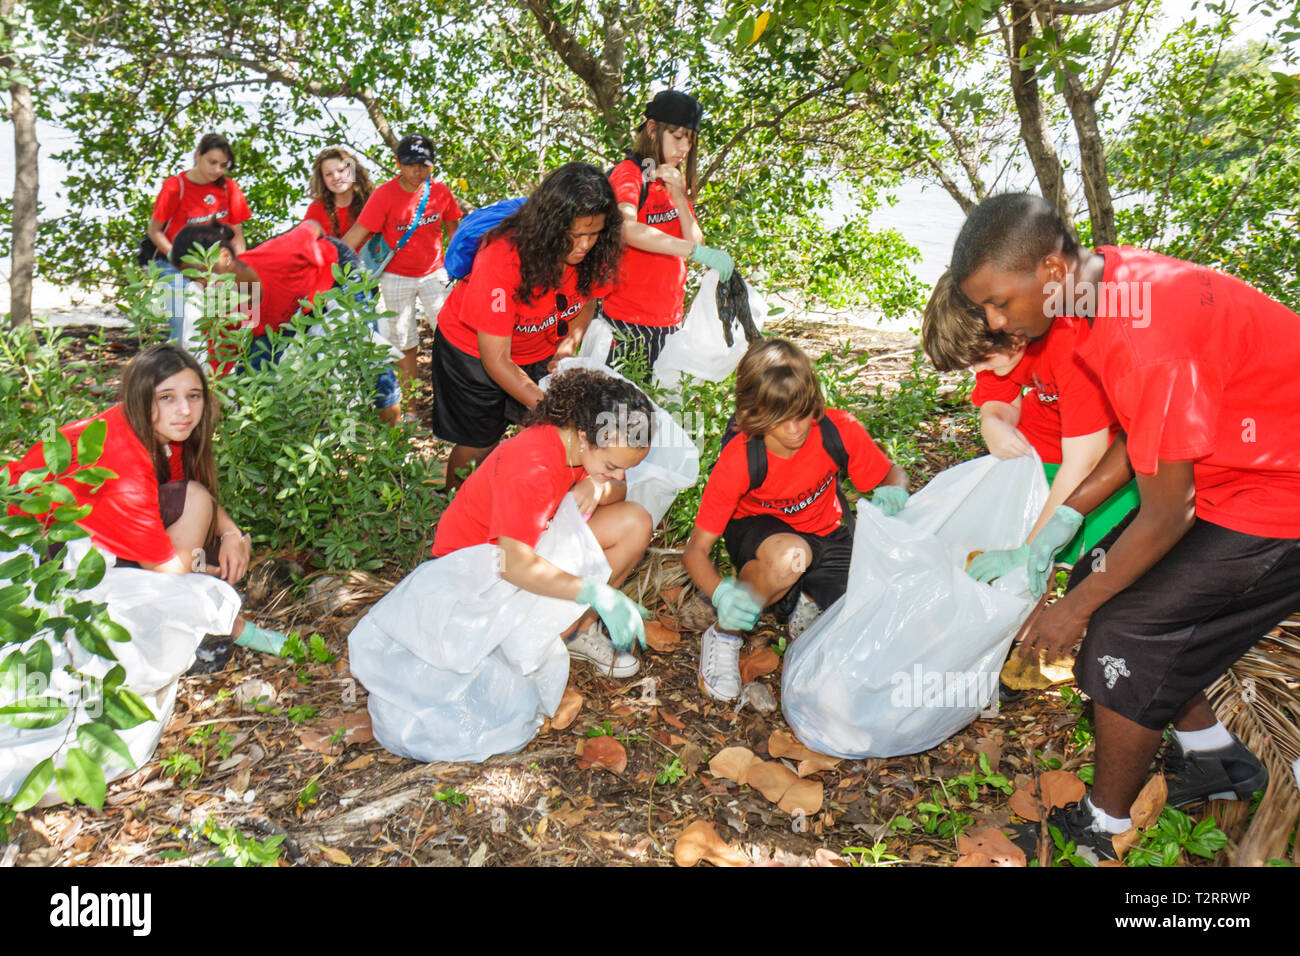 Miami Florida,nettoyer la communauté de nettoyage, bénévoles bénévoles bénévoles travailleurs du travail, travailler ensemble aider, aider les étudiants Hispani Banque D'Images